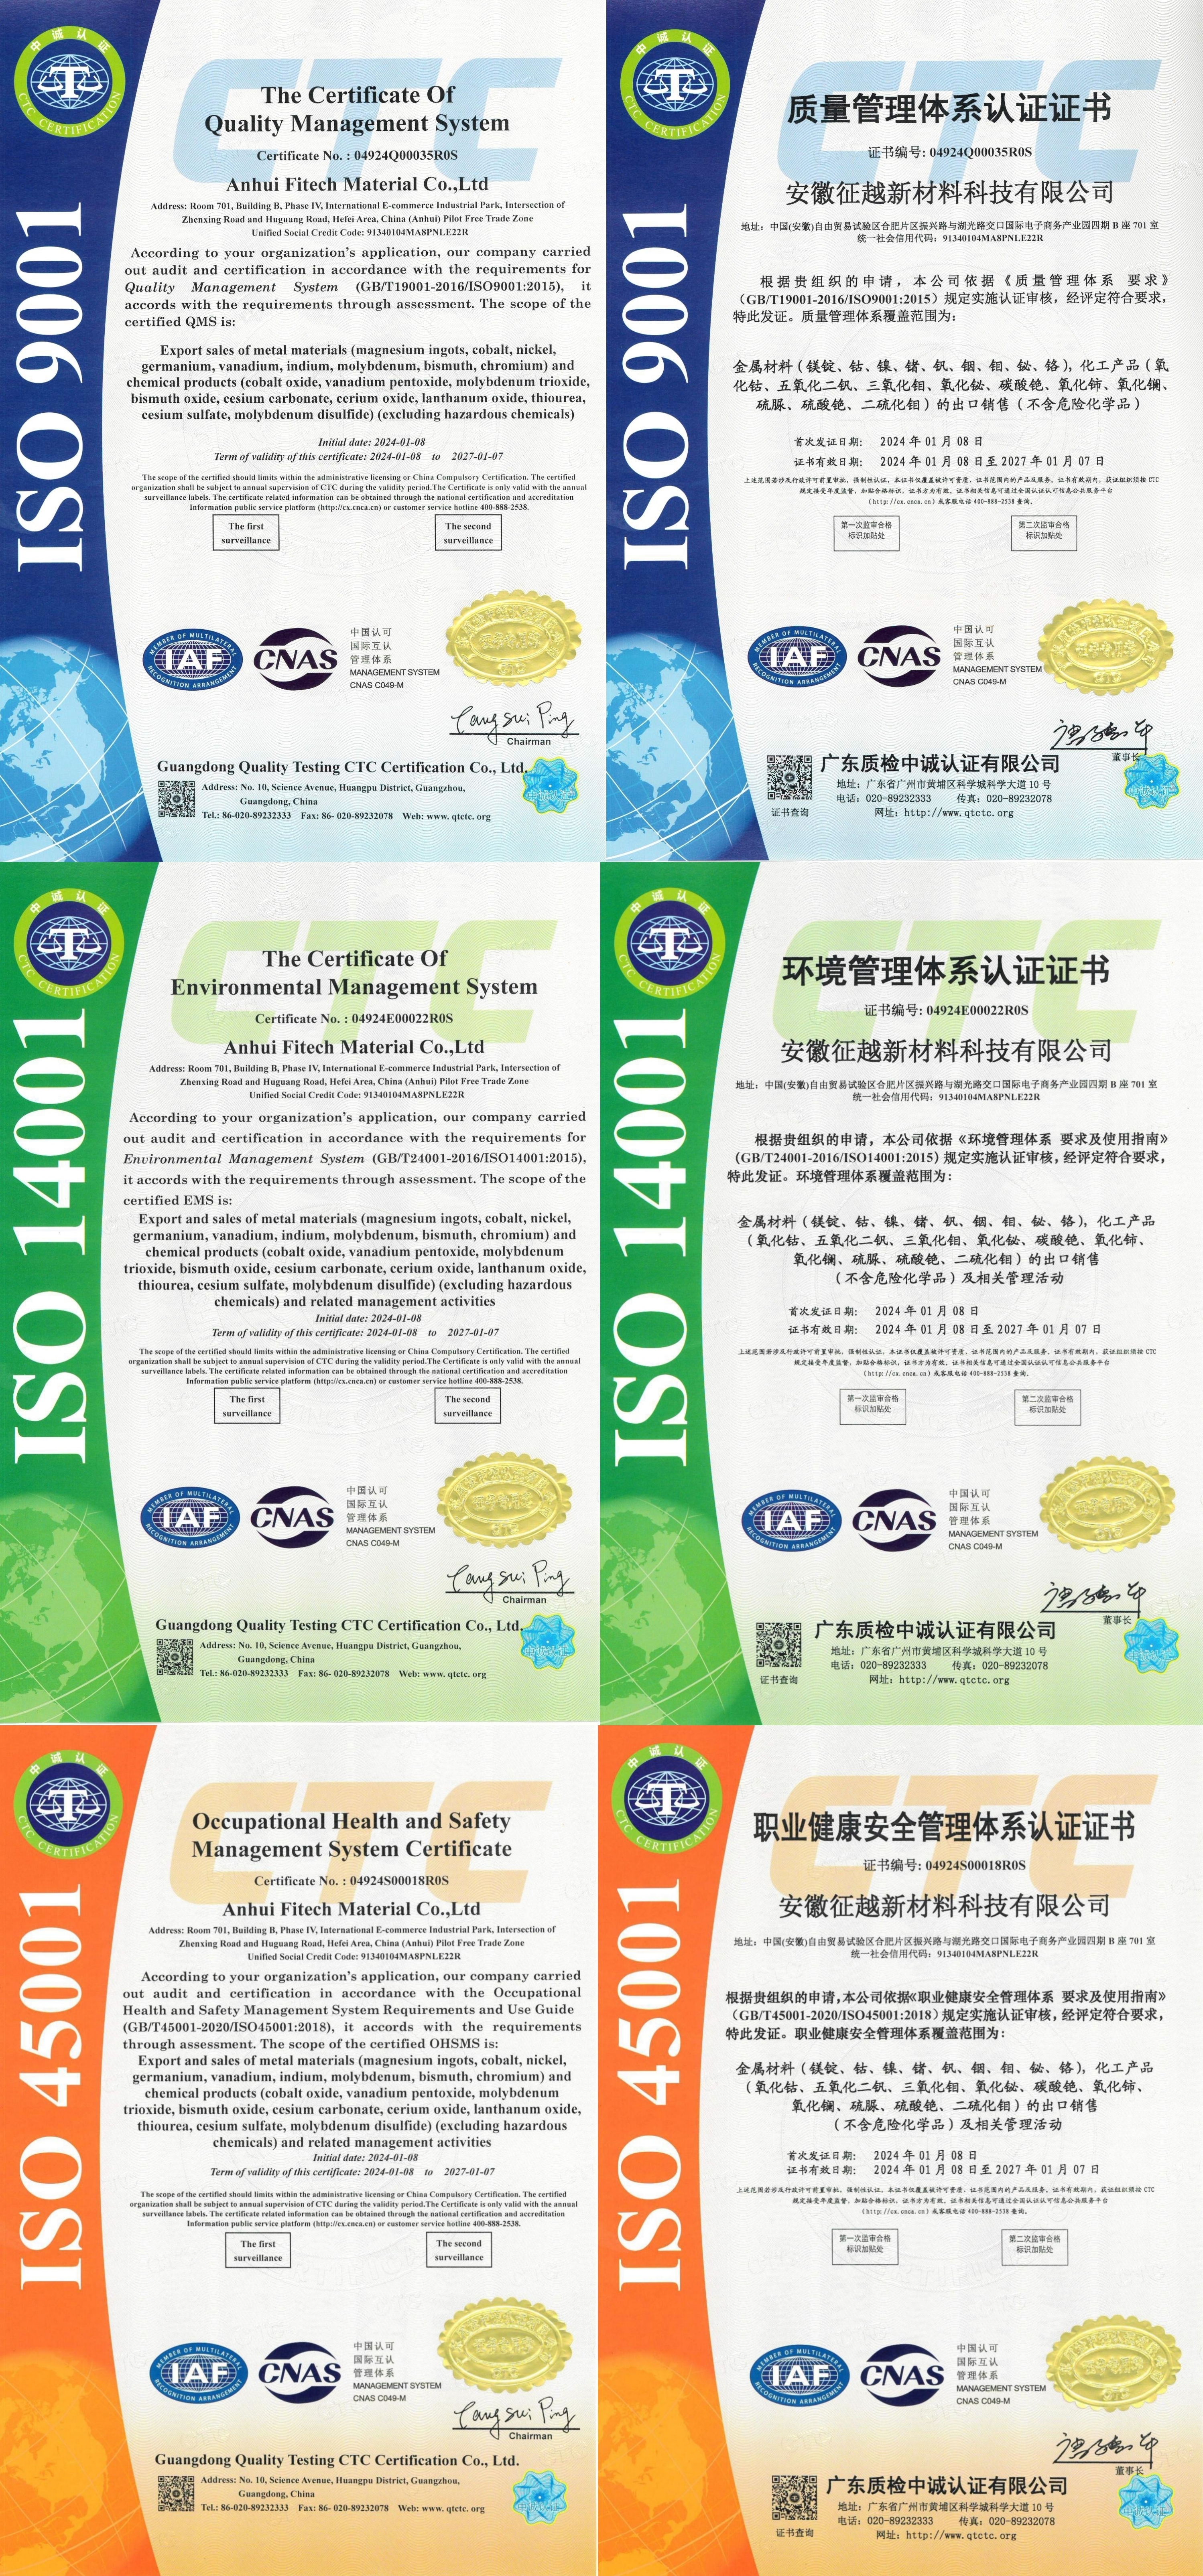 FITECH läpäisi ISO Management System -sertifioinnin